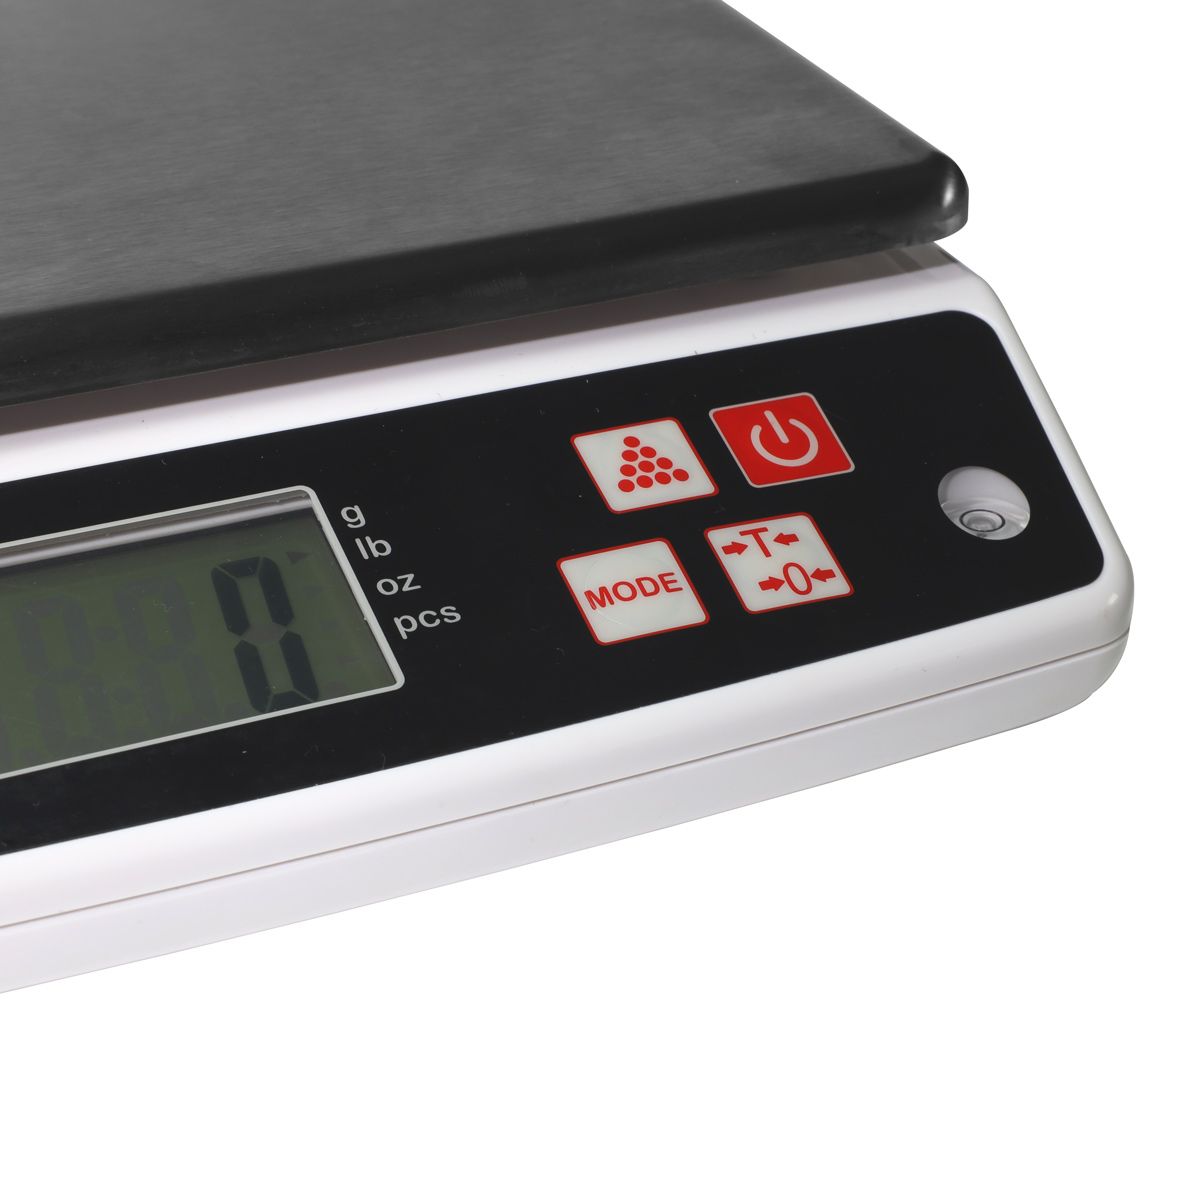 Balance de cuisine numérique professionnelle avec écran LCD, précision  exceptionnelle jusqu'à 0,1 gx 5 kg Noir 